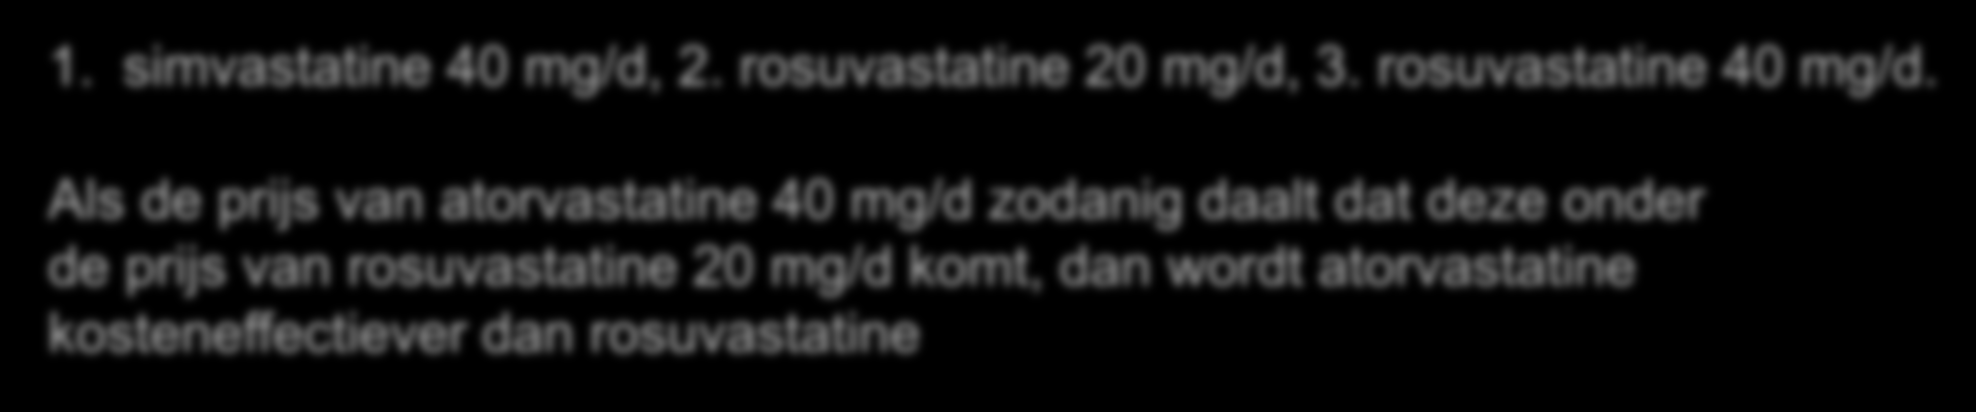 Kostenoverweging 1. simvastatine 40 mg/d, 2. rosuvastatine 20 mg/d, 3. rosuvastatine 40 mg/d.